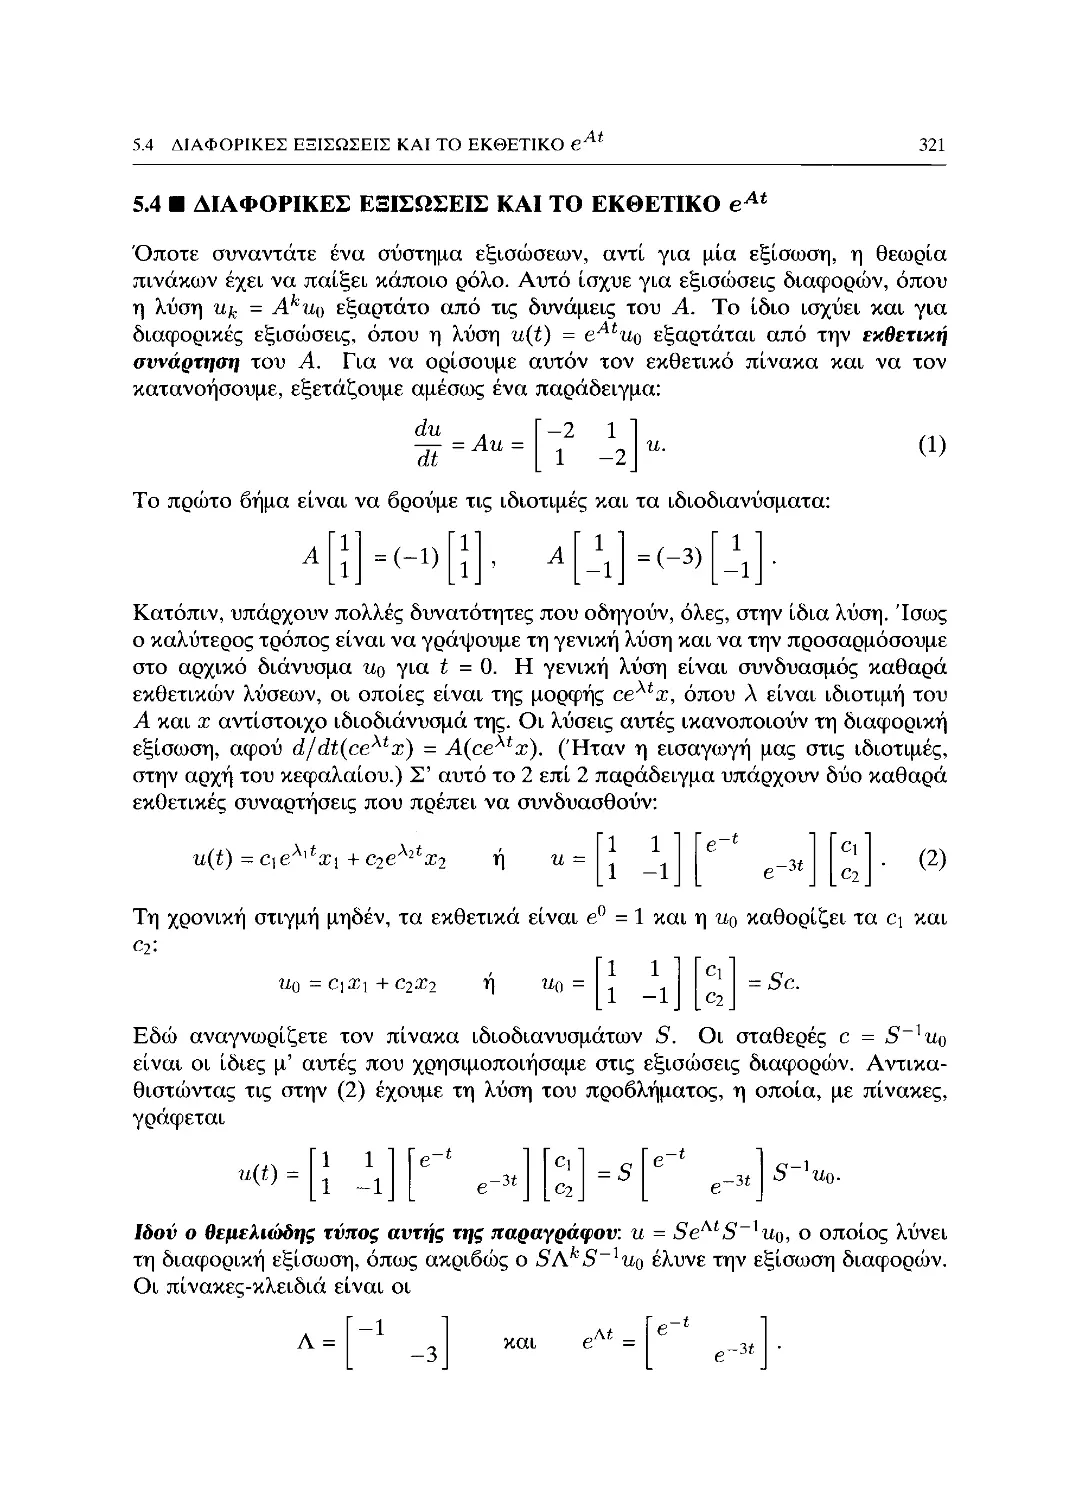 5.4 Διαφορικές εξισώσεις και το εκθετικό e^AT